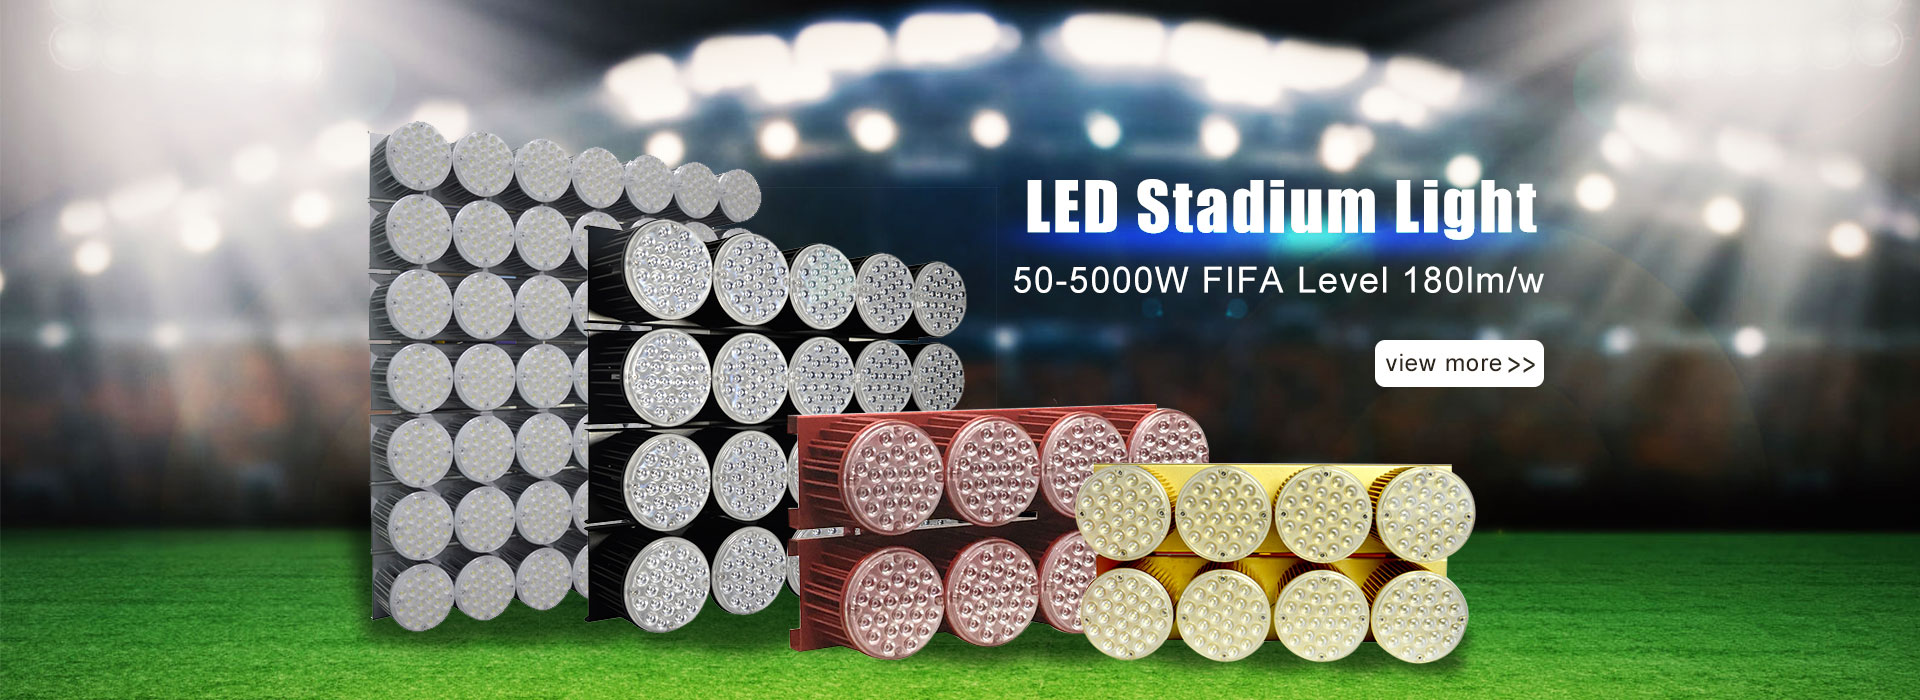 Stadium Light Manufacturers 